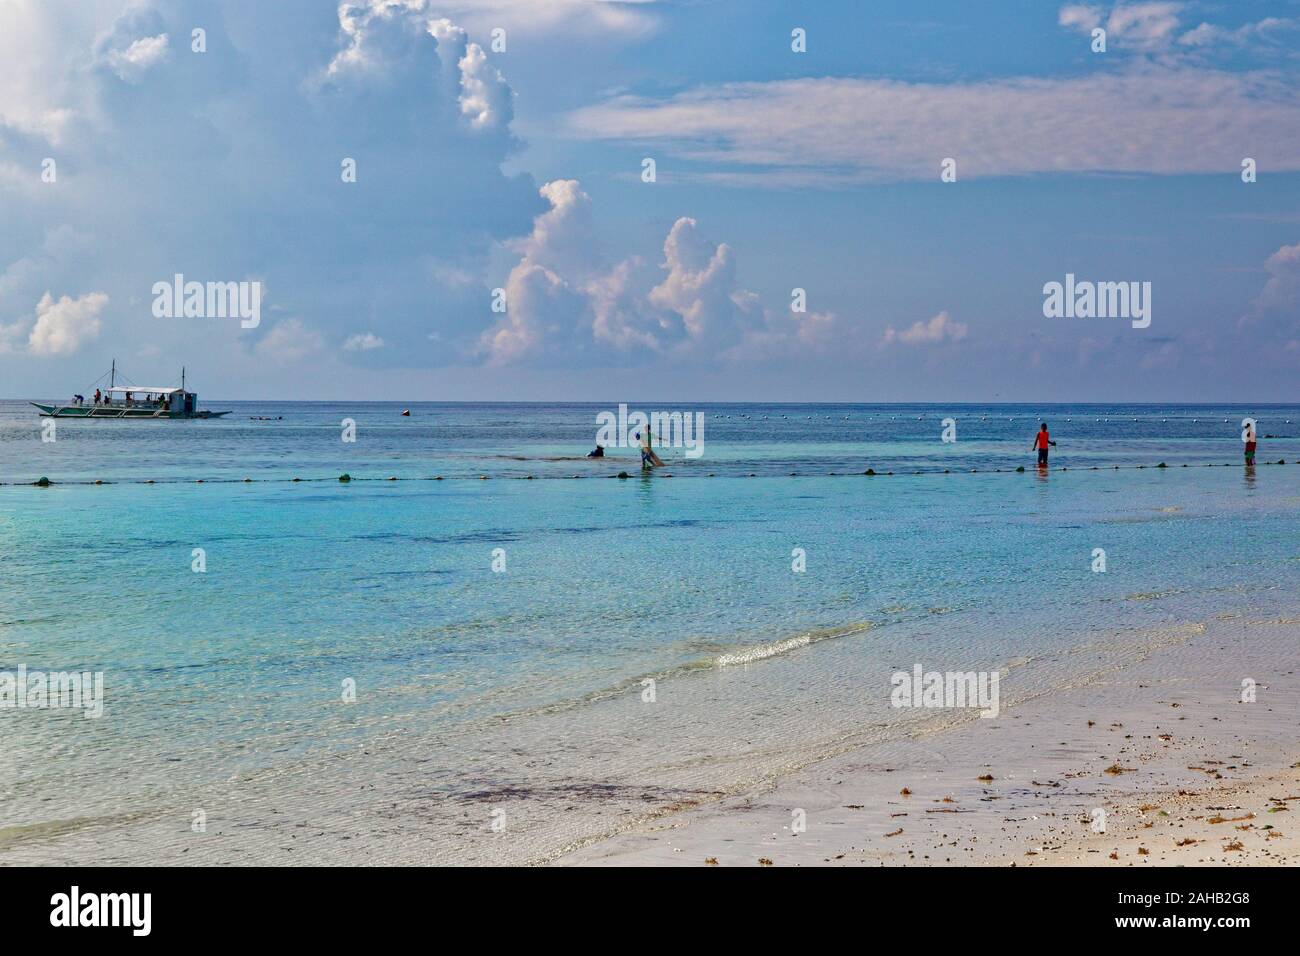 Les moules chasseurs dans les eaux de mer de Bohol, Panglao beach dans Philippines Banque D'Images